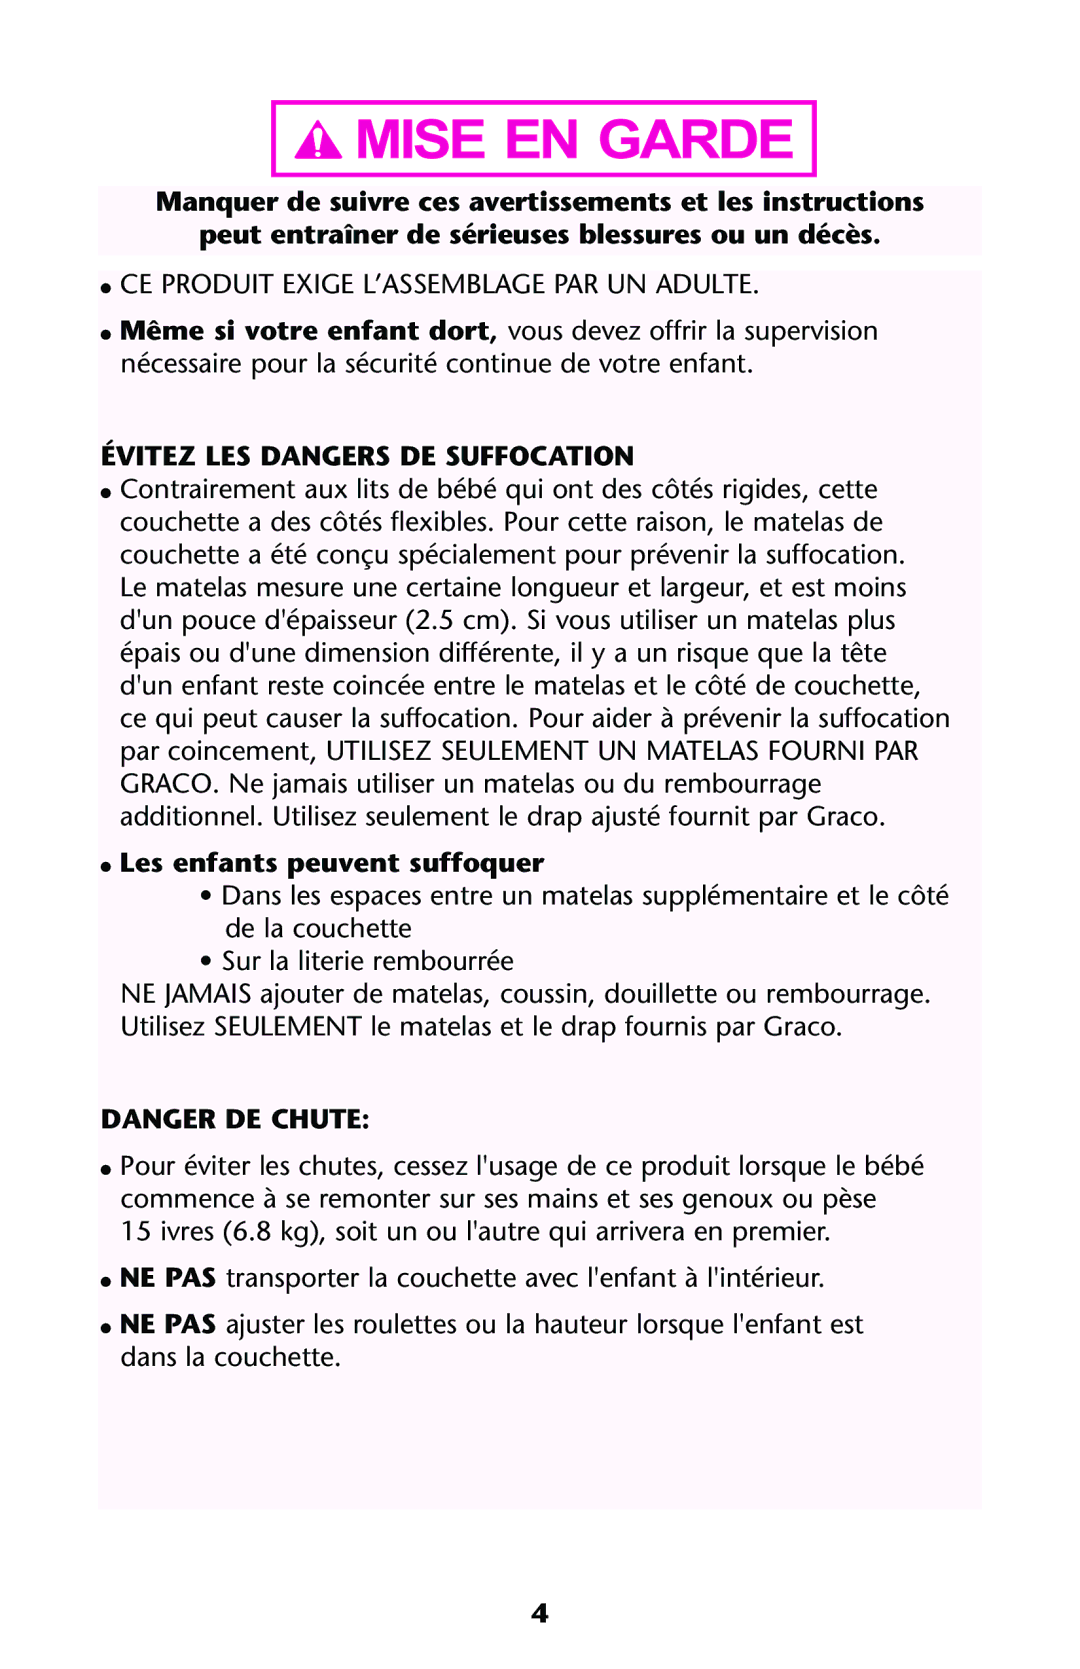 Graco ISPJ001AB manual  CE Produit Exige L’ASSEMBLAGE PAR UN Adulte, Évitez LES Dangers DE Suffocation 